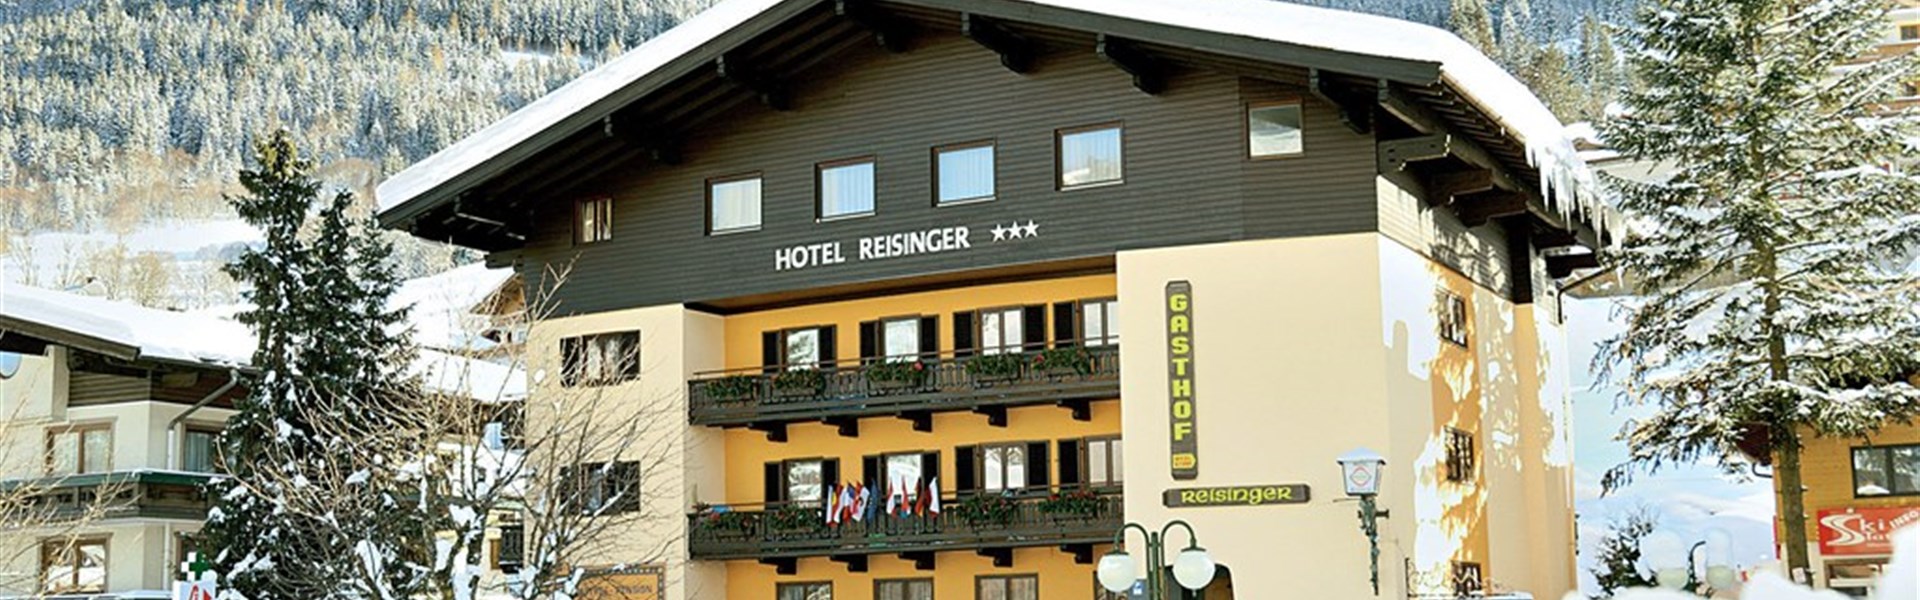 Hotel Reisinger - 